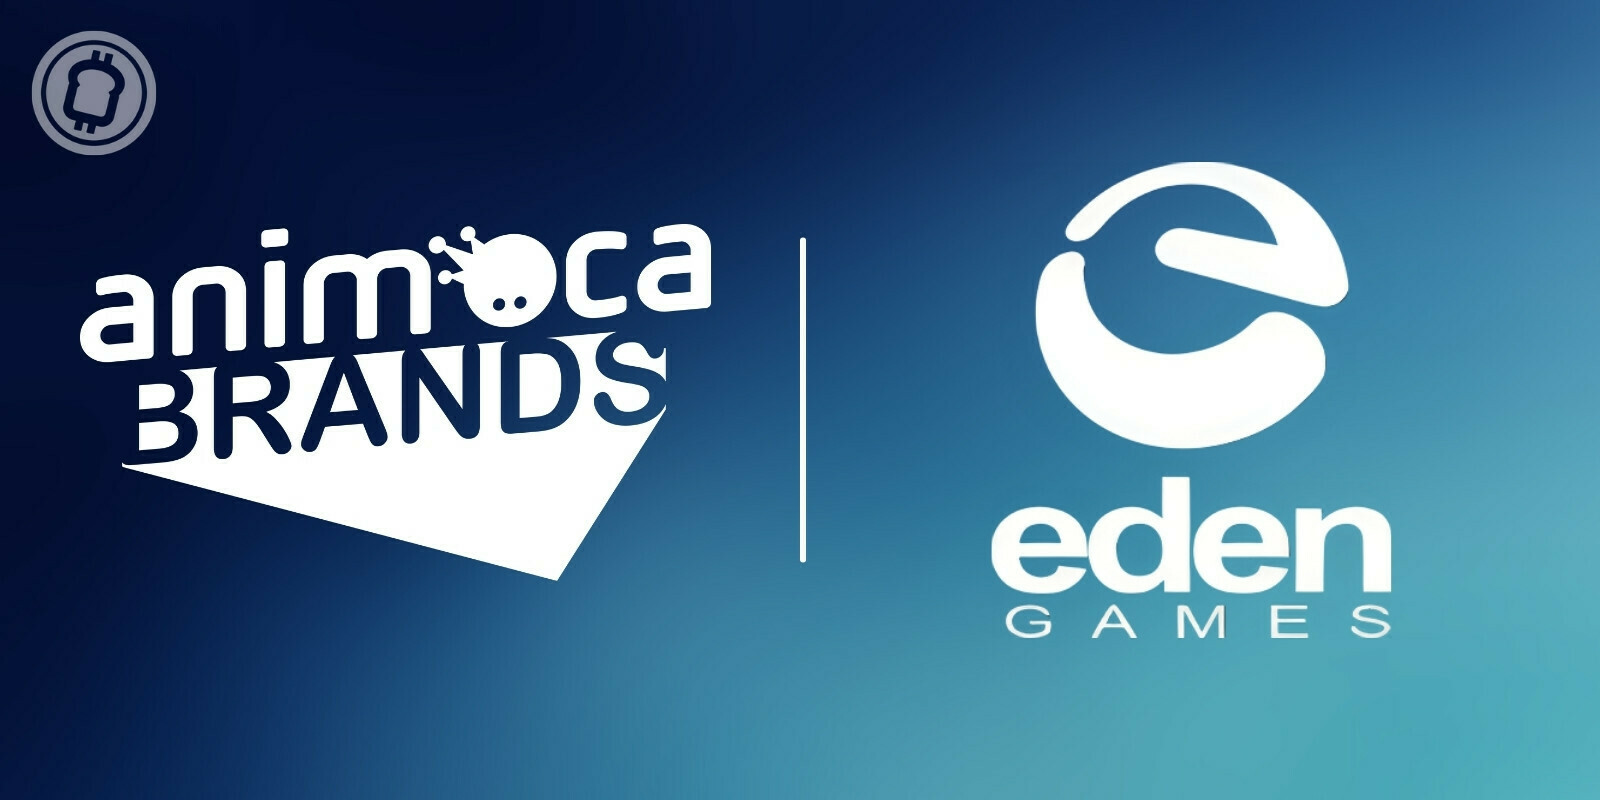 Animoca Brands rachète Eden Games, un studio français spécialisé dans les courses automobiles